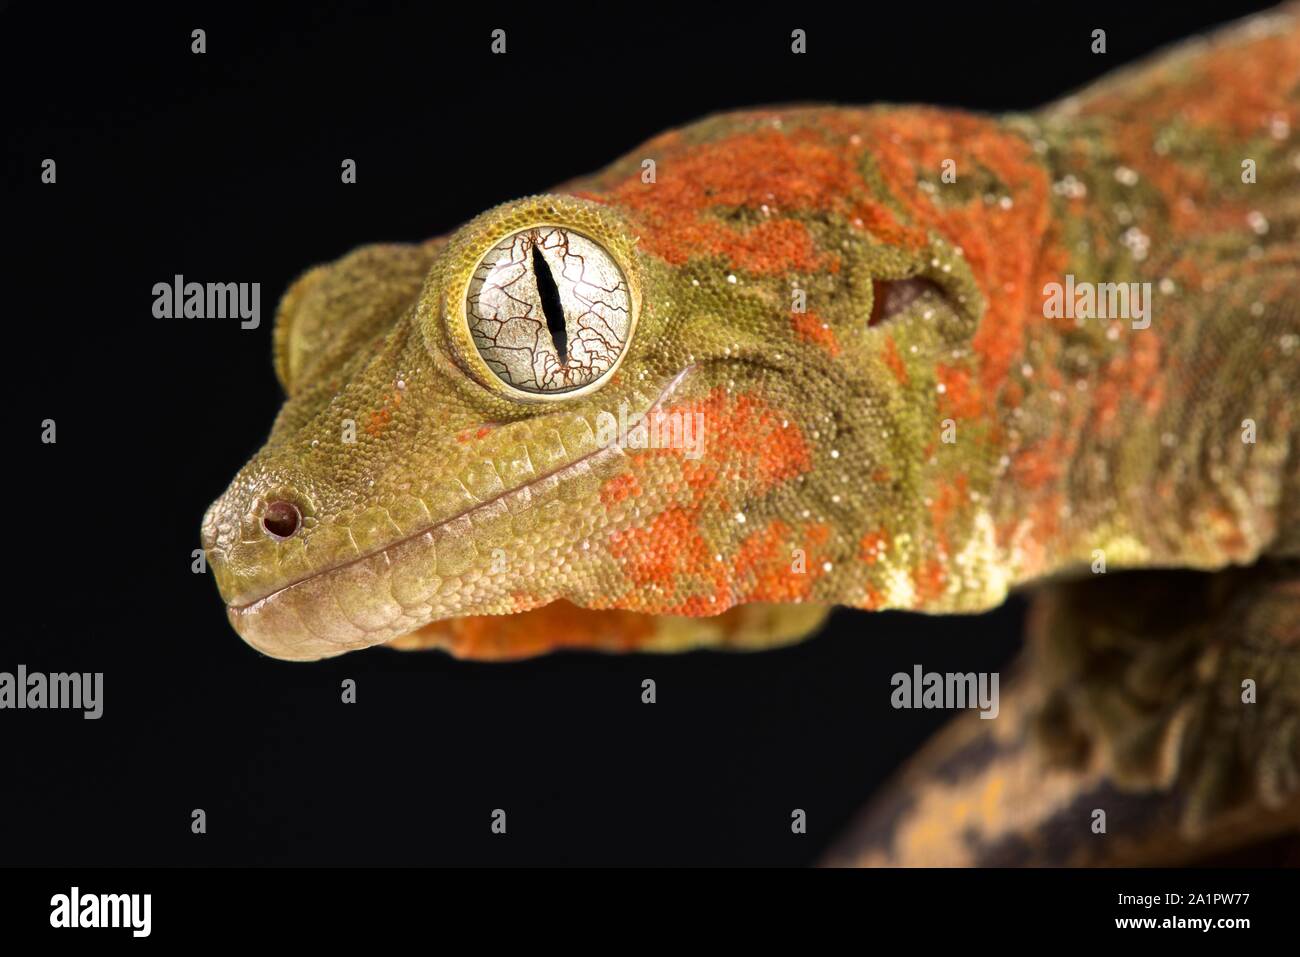 Mossy New Caledonian gecko (Mniarogekko chahoua) Stock Photo